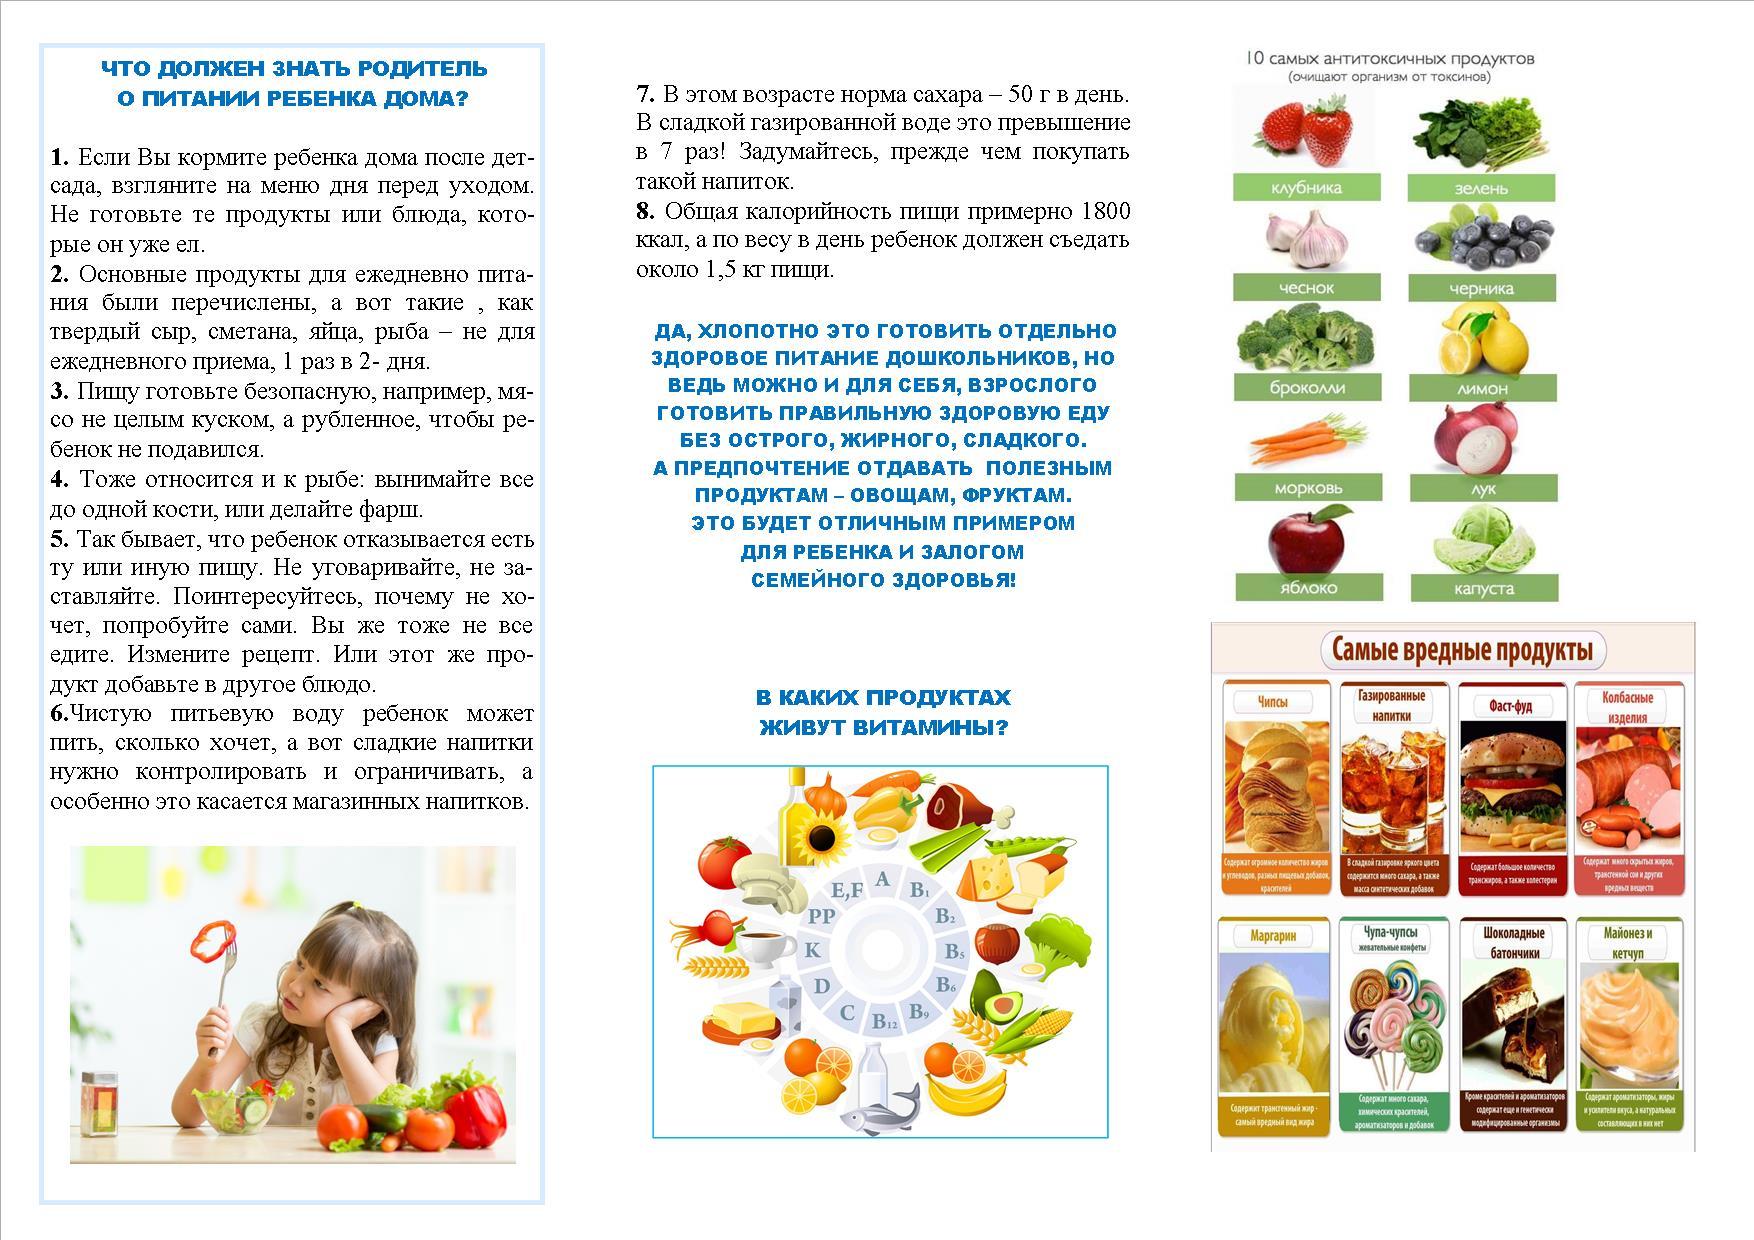 Буклеты для родителей в детском саду по правильному питанию